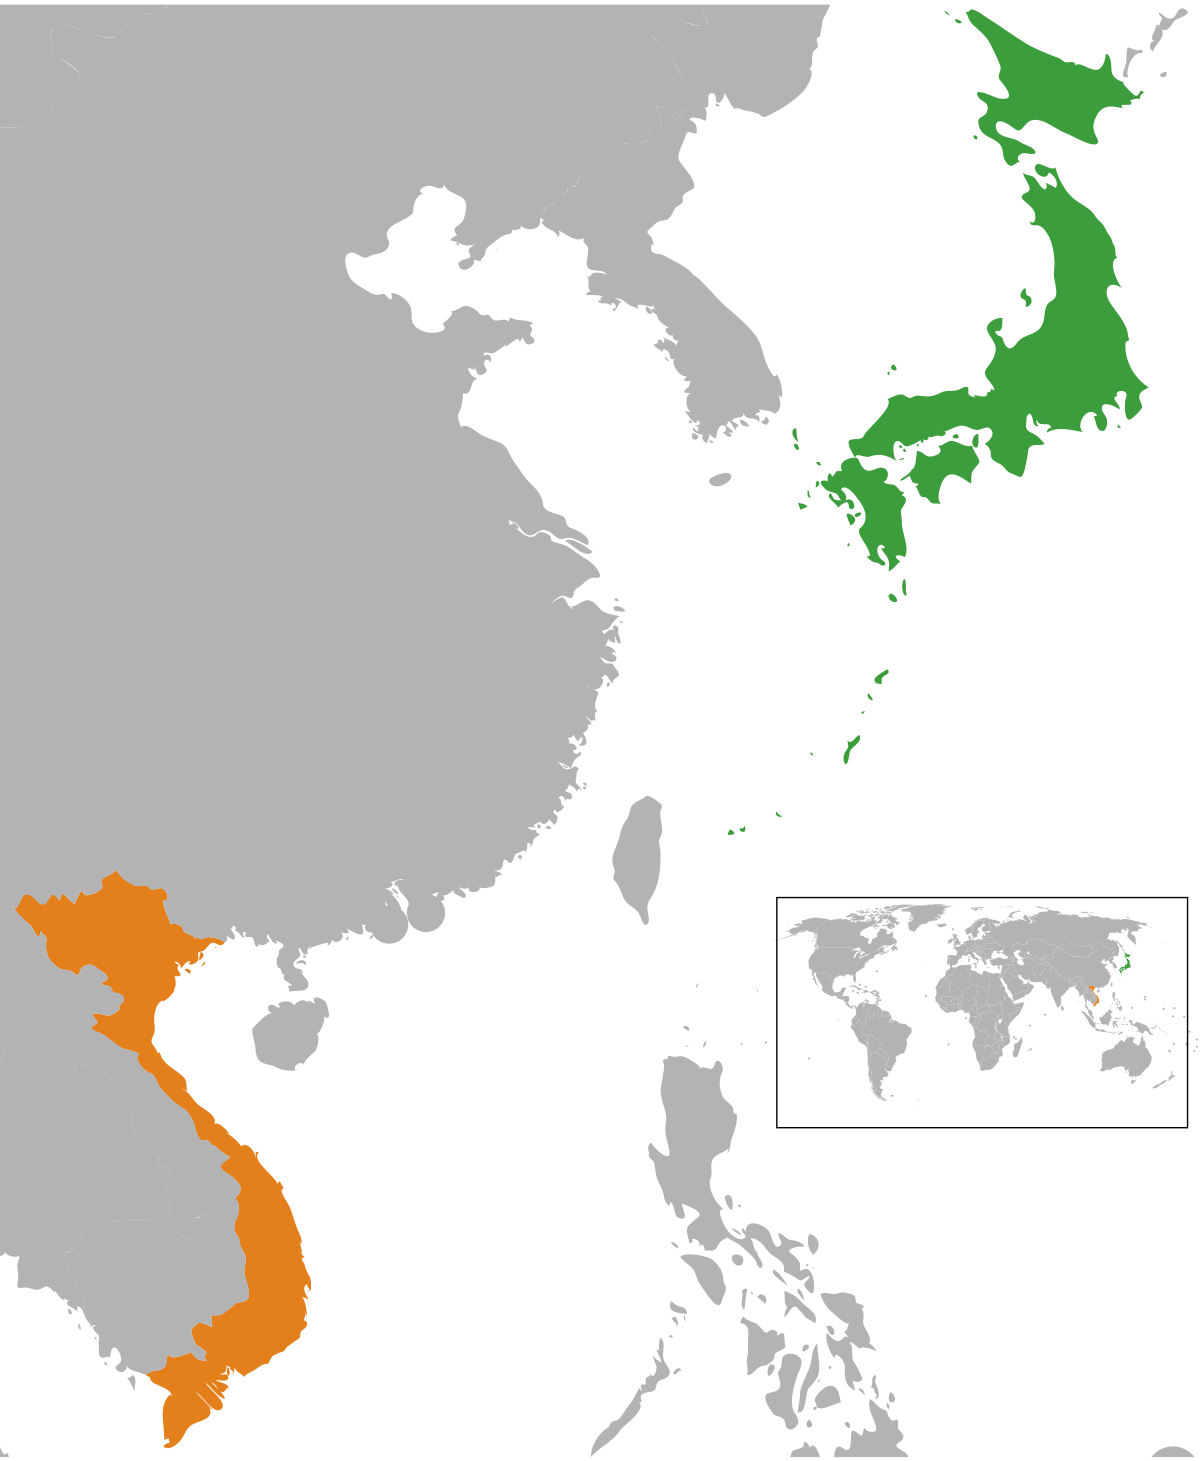 Quan hệ Nhật Bản - Việt Nam: Quan hệ giữa Nhật Bản và Việt Nam được xem là một trong những quan hệ quan trọng nhất của khu vực châu Á. Để hiểu thêm về sự phát triển và sâu sắc của quan hệ này, hãy xem hình ảnh liên quan.